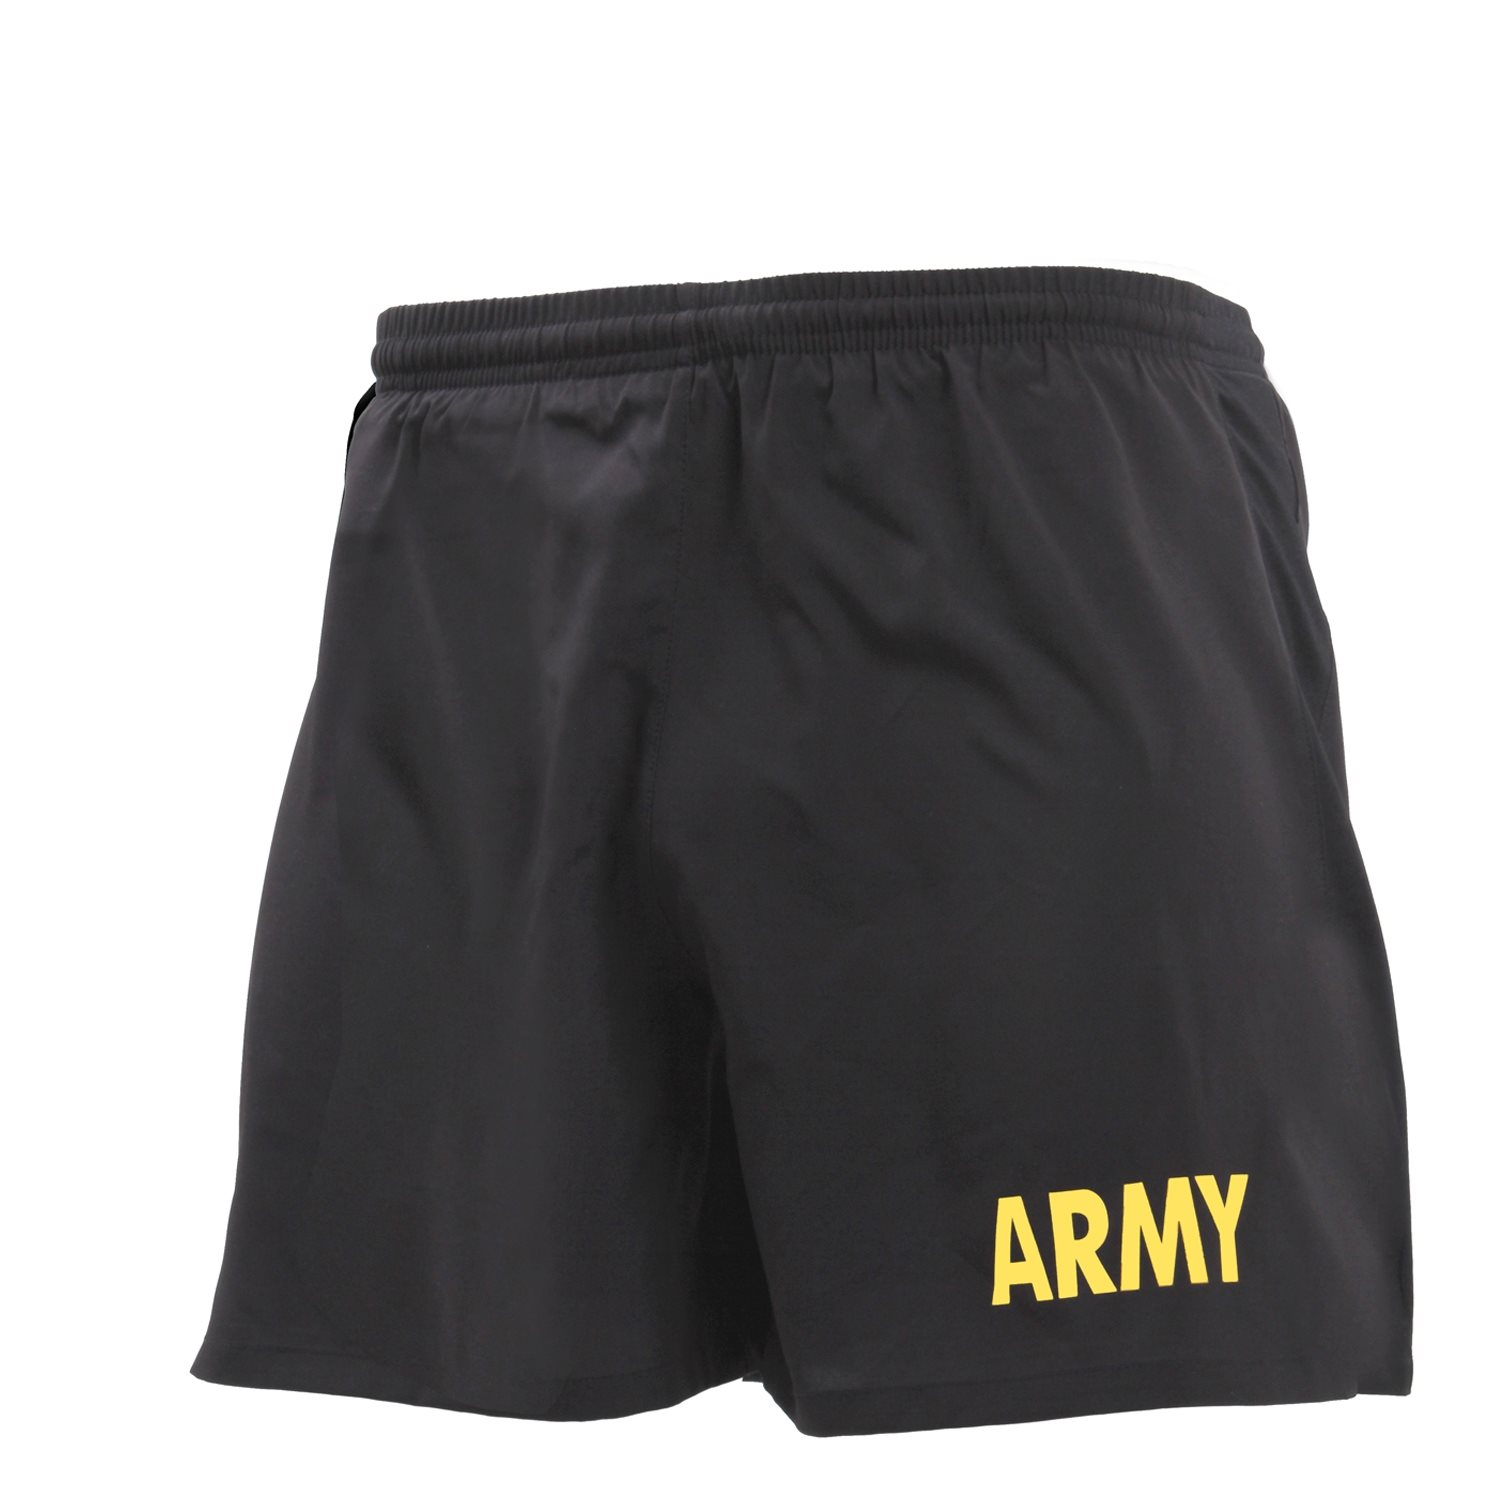 Nohavice krátke s nápisom ARMY ČIERNE